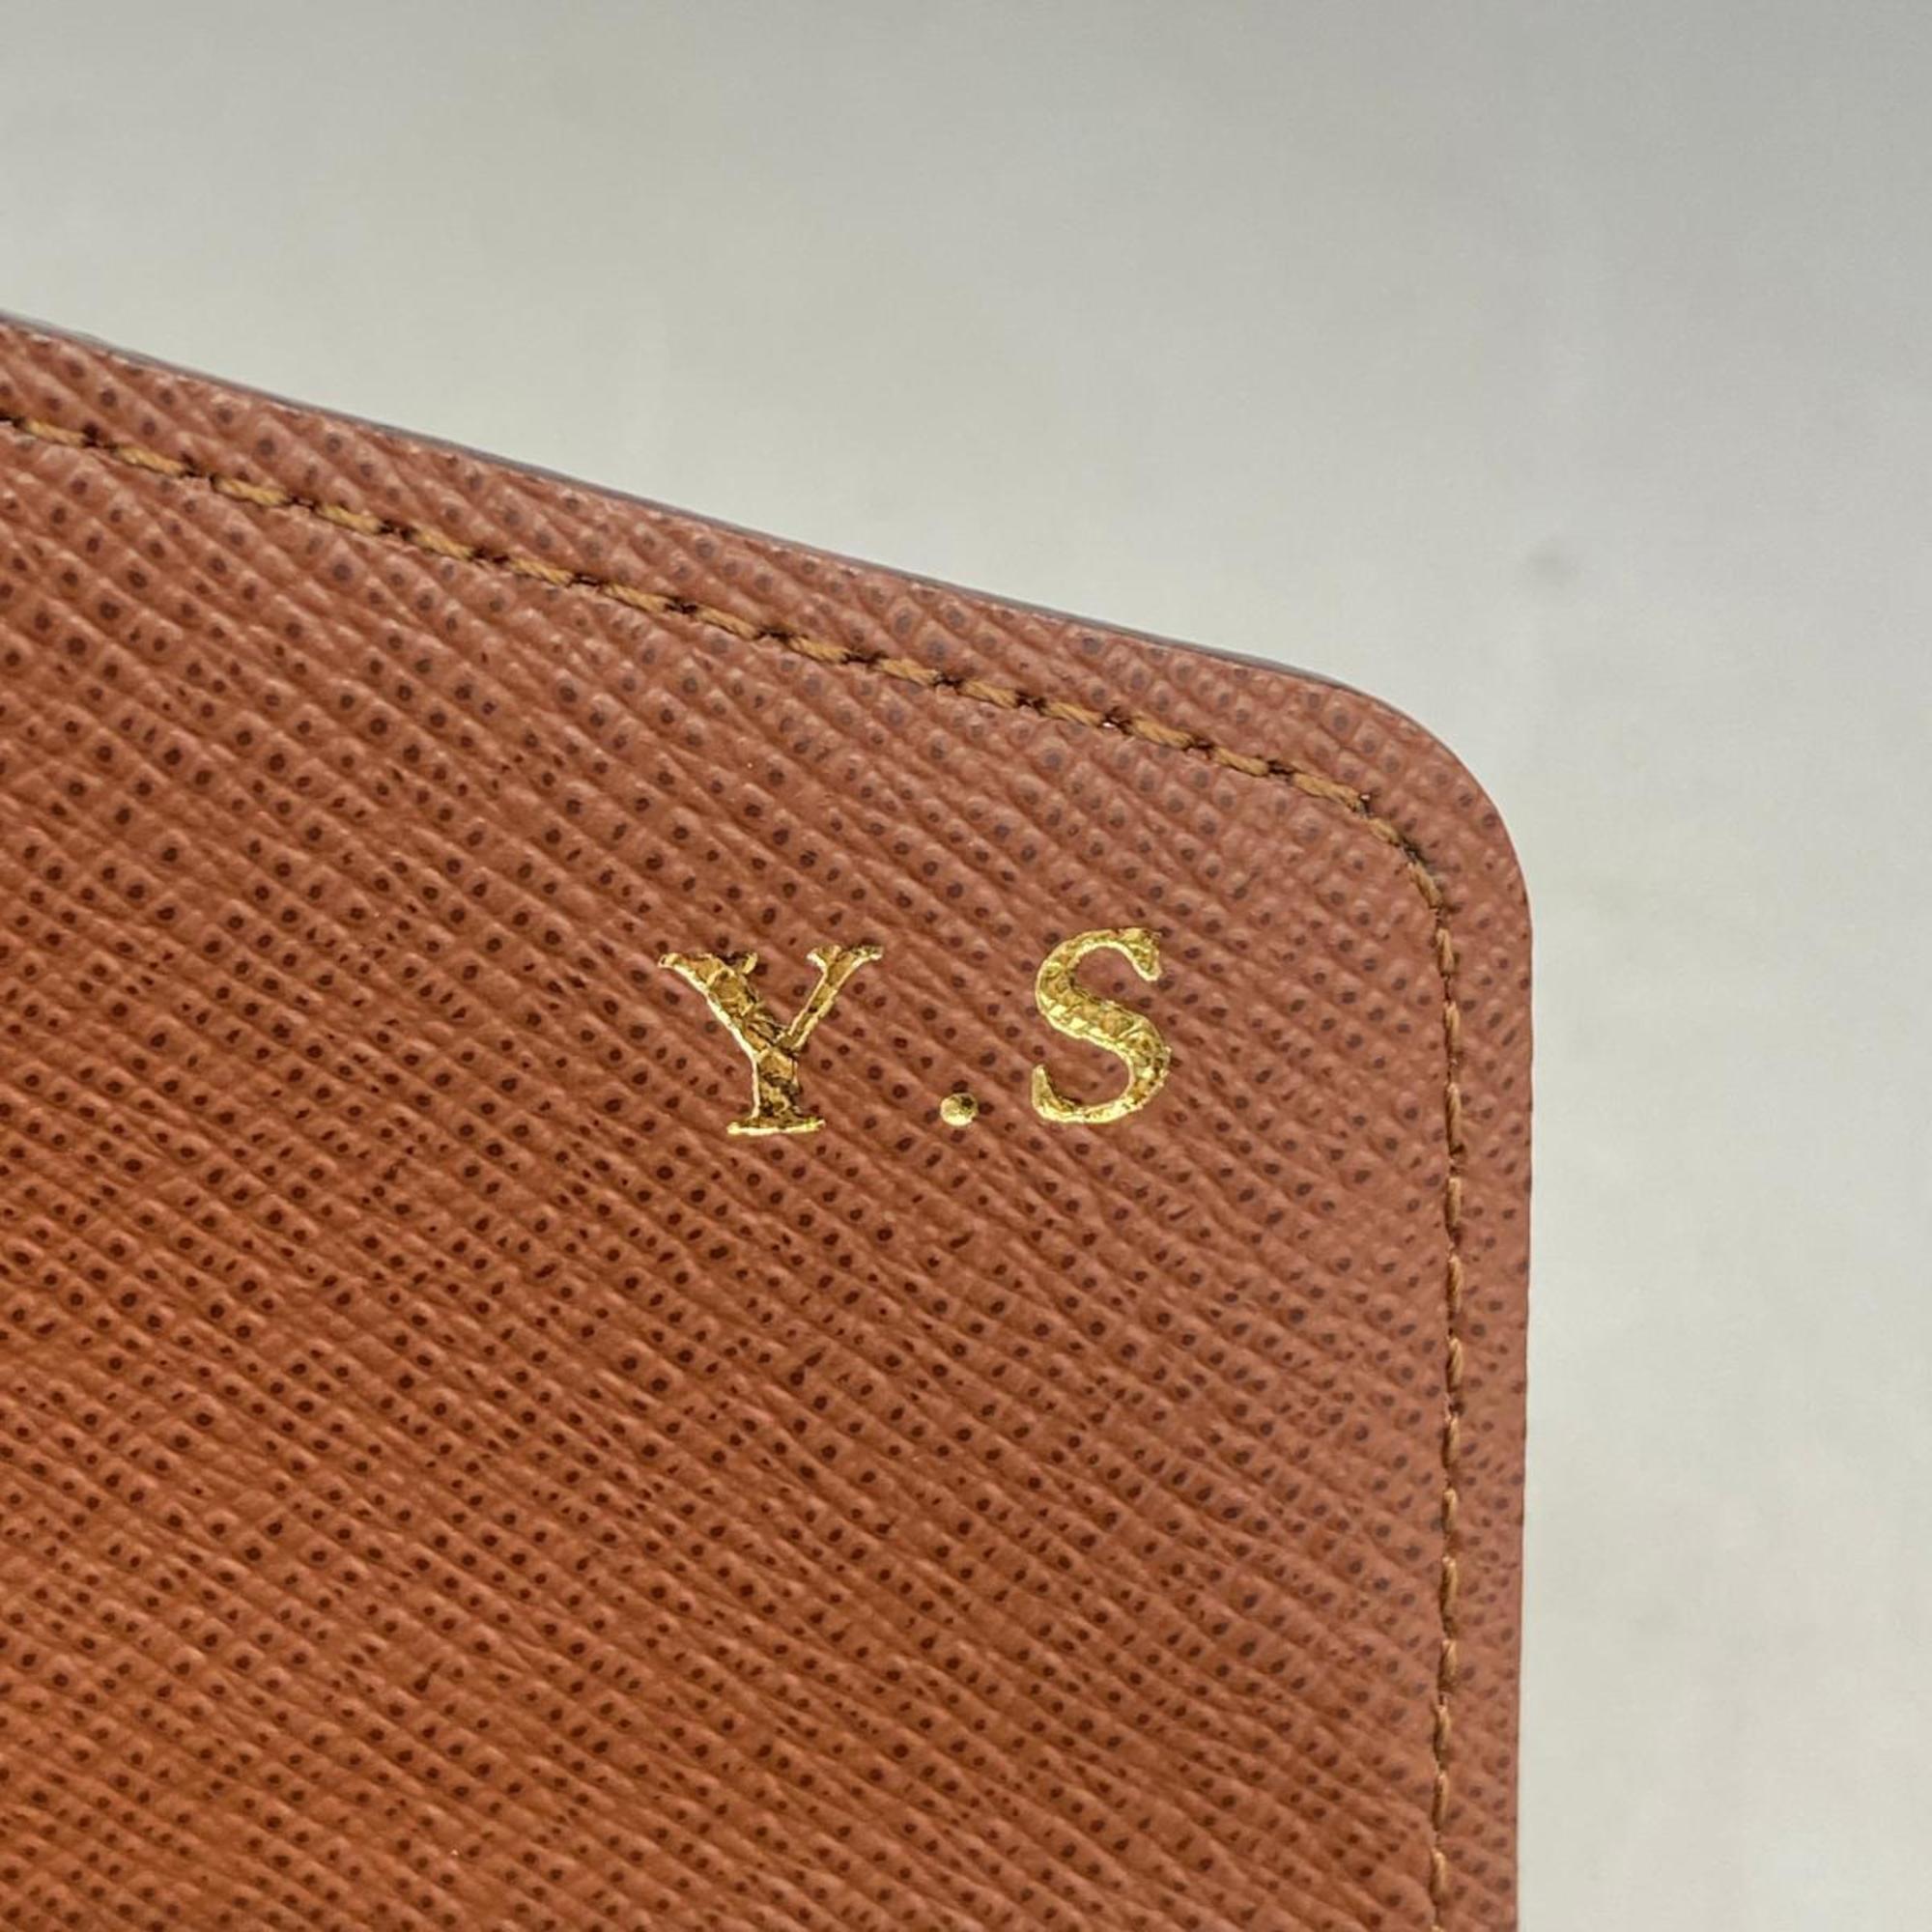 ルイ・ヴィトン(Louis Vuitton) ルイ・ヴィトン 長財布 モノグラム ポルトフォイユサラ M60531 ブラウンメンズ レディース